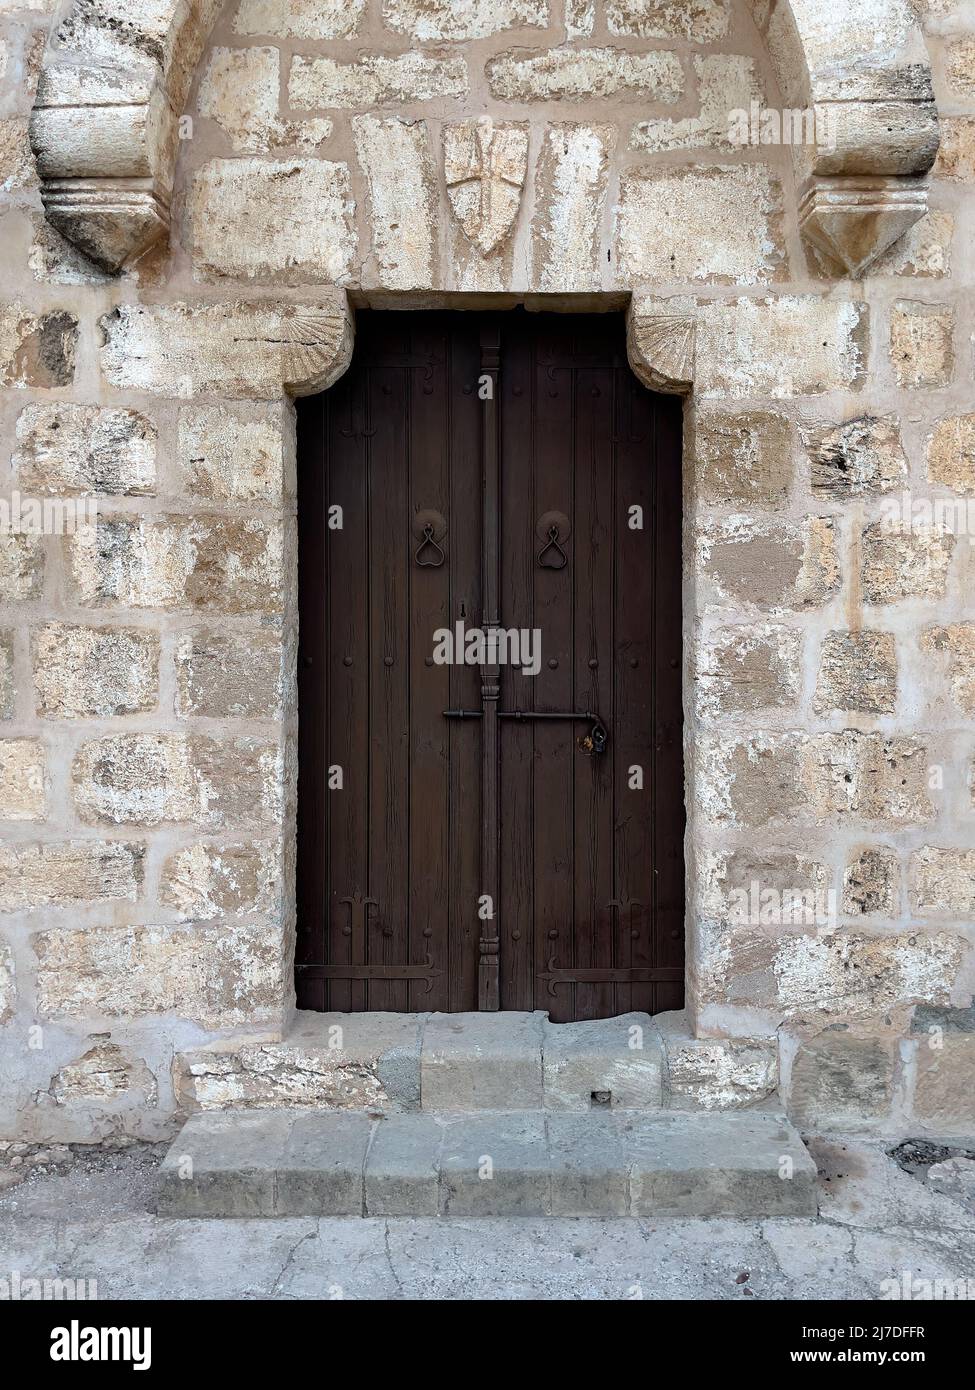 Antigua puerta de madera marrón con un enorme equipo de bloqueo en una pared de piedra Foto de stock